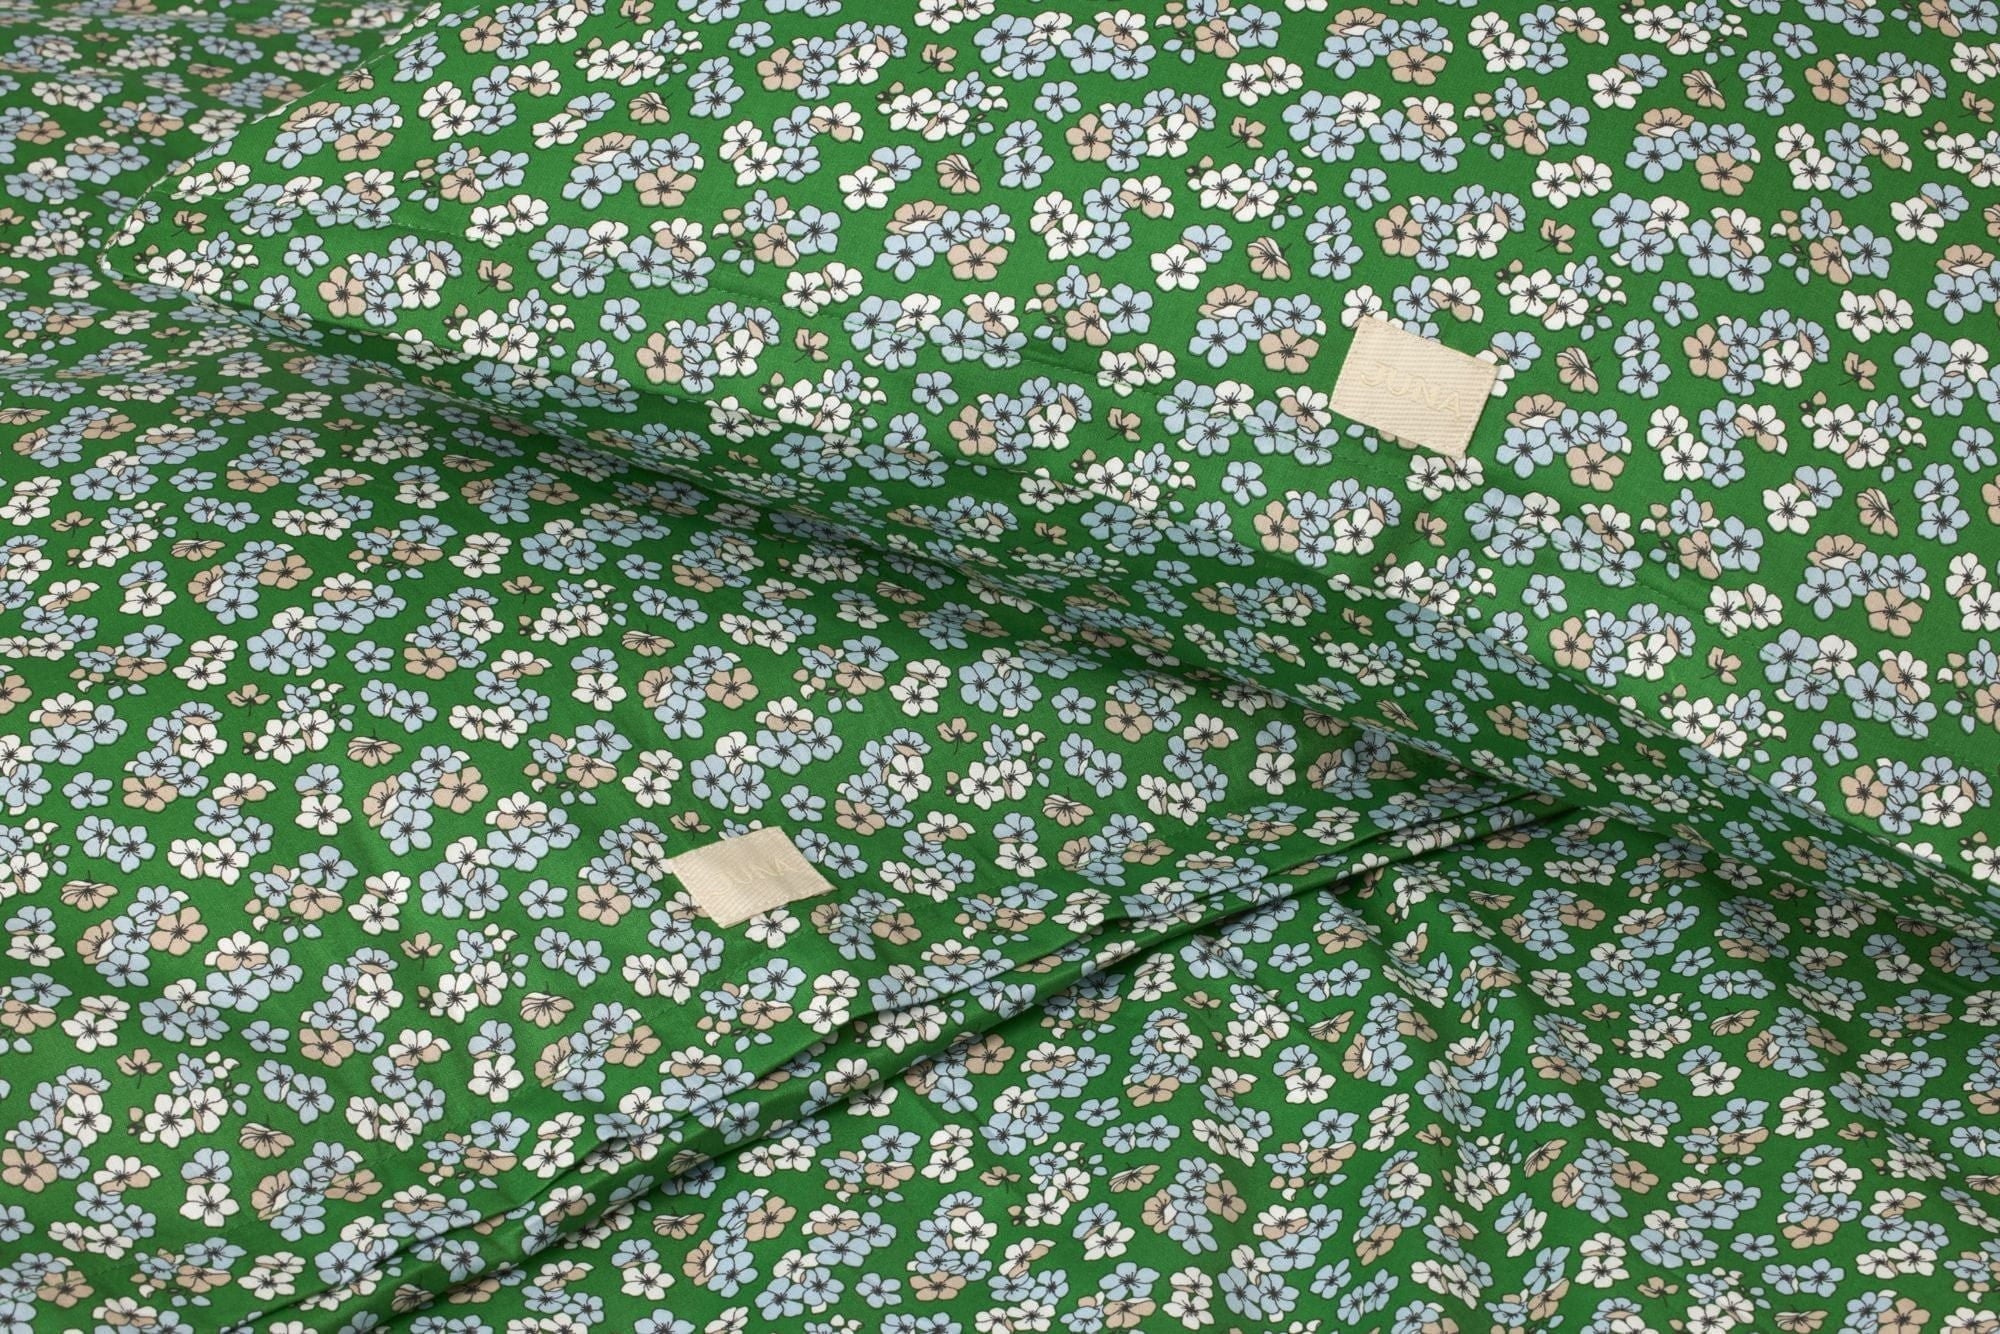 Juna Aangenaam bedlinnen 140x200 cm, groen